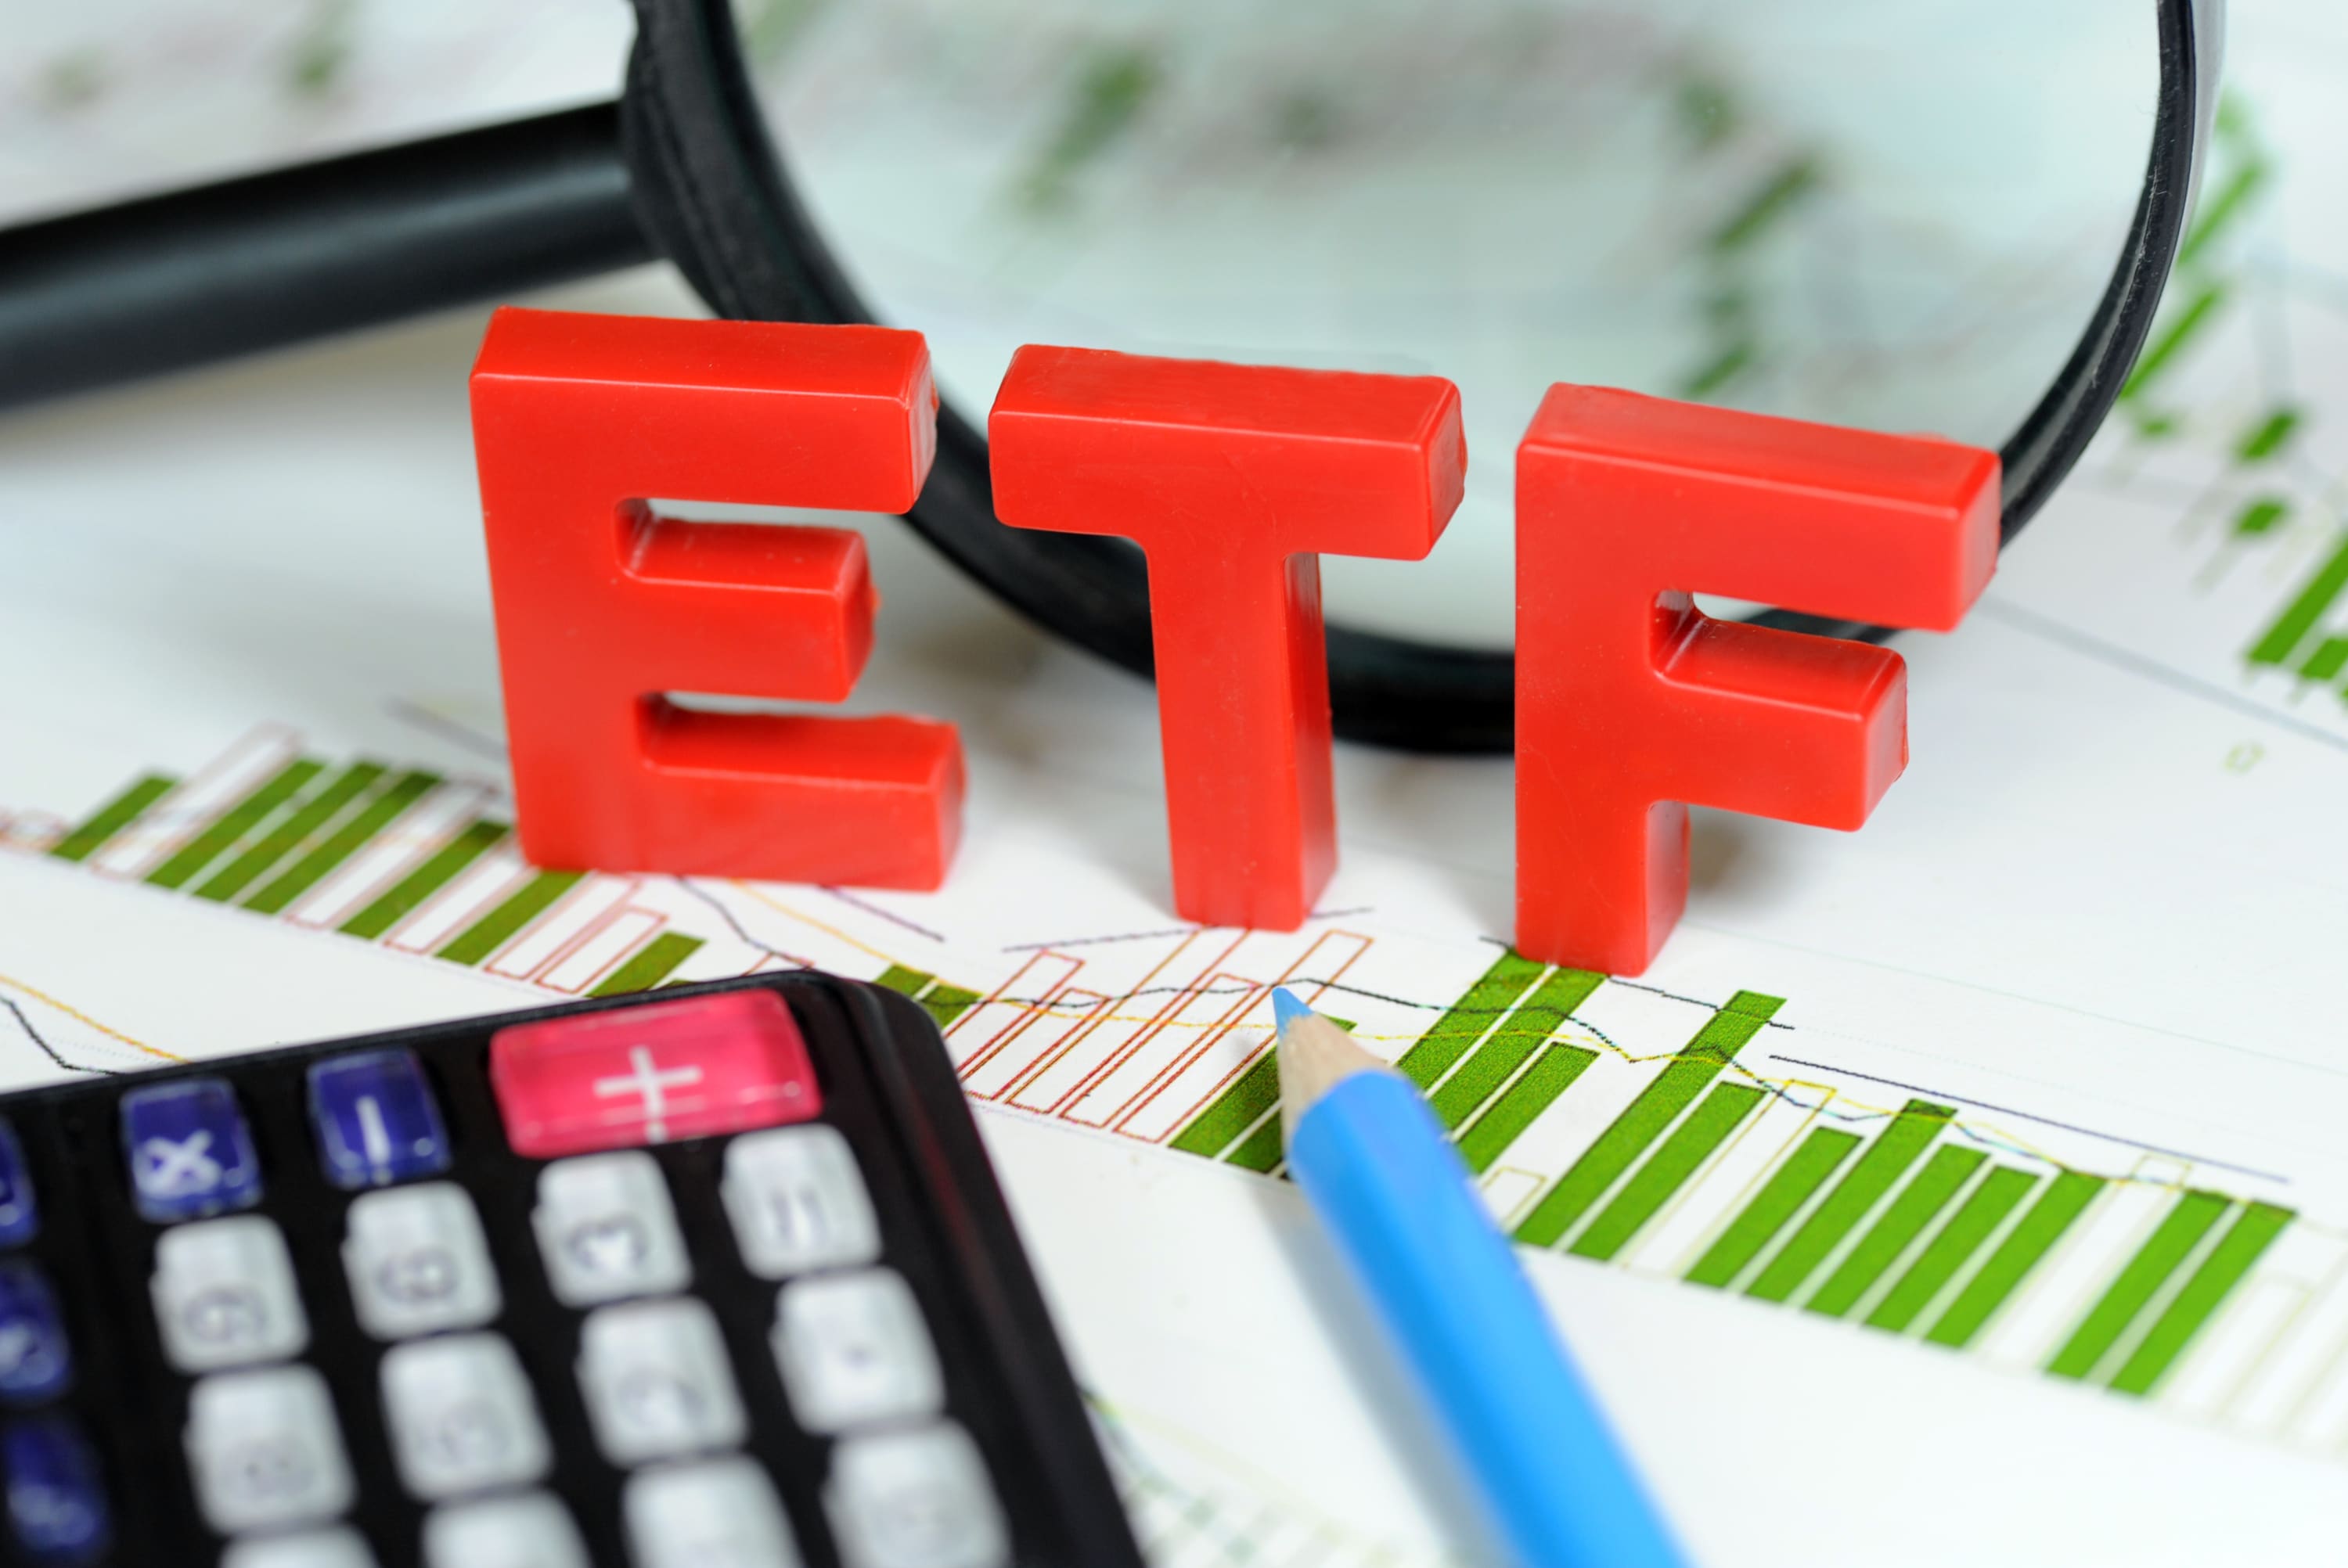 سهام دولت و صندوق های قابل معامله در راه بورس؛ آیا مردم با خرید ETF دارایی جدید خواهند داشت؟